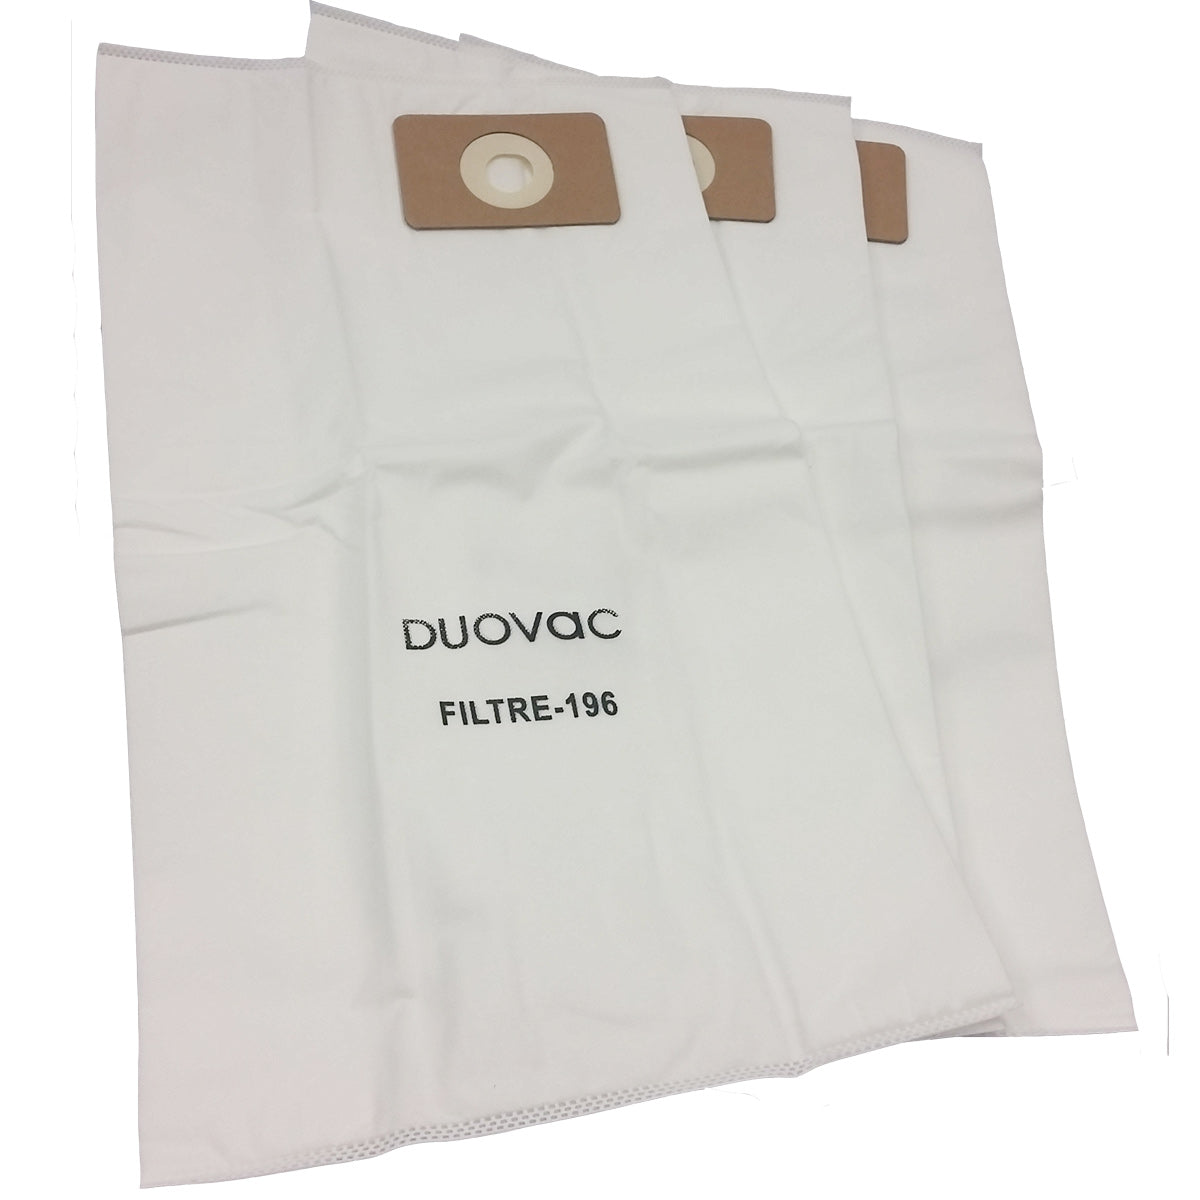 Duovac Central Vacuum Bags 3pk Filtre-196 DuoVac Vacuum Plus Canada